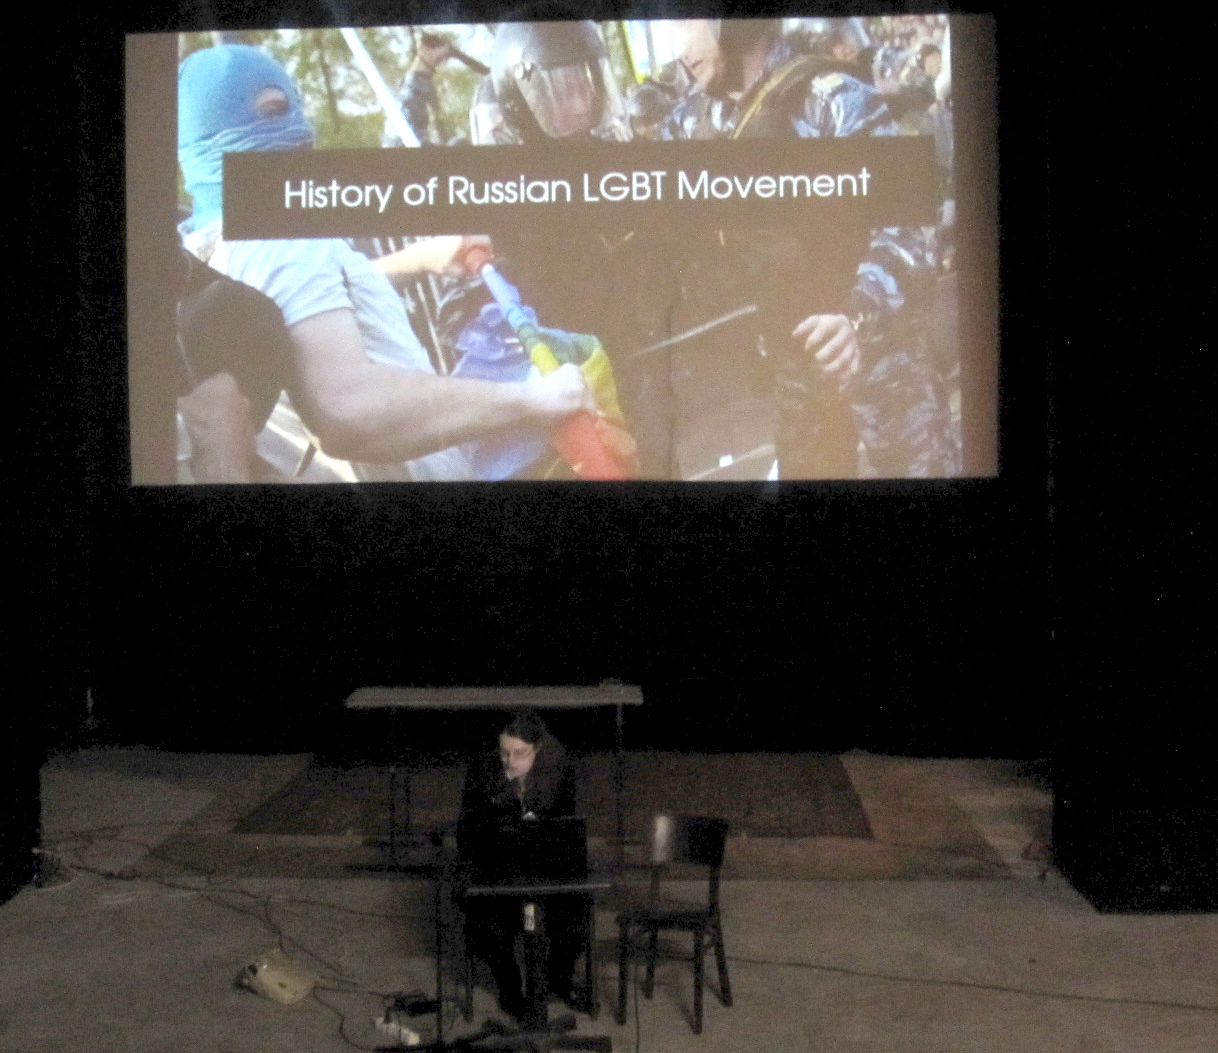 Diskuze na téma LGBT hnutí v současném Rusku: čelení klerikálnímu konzervatismu